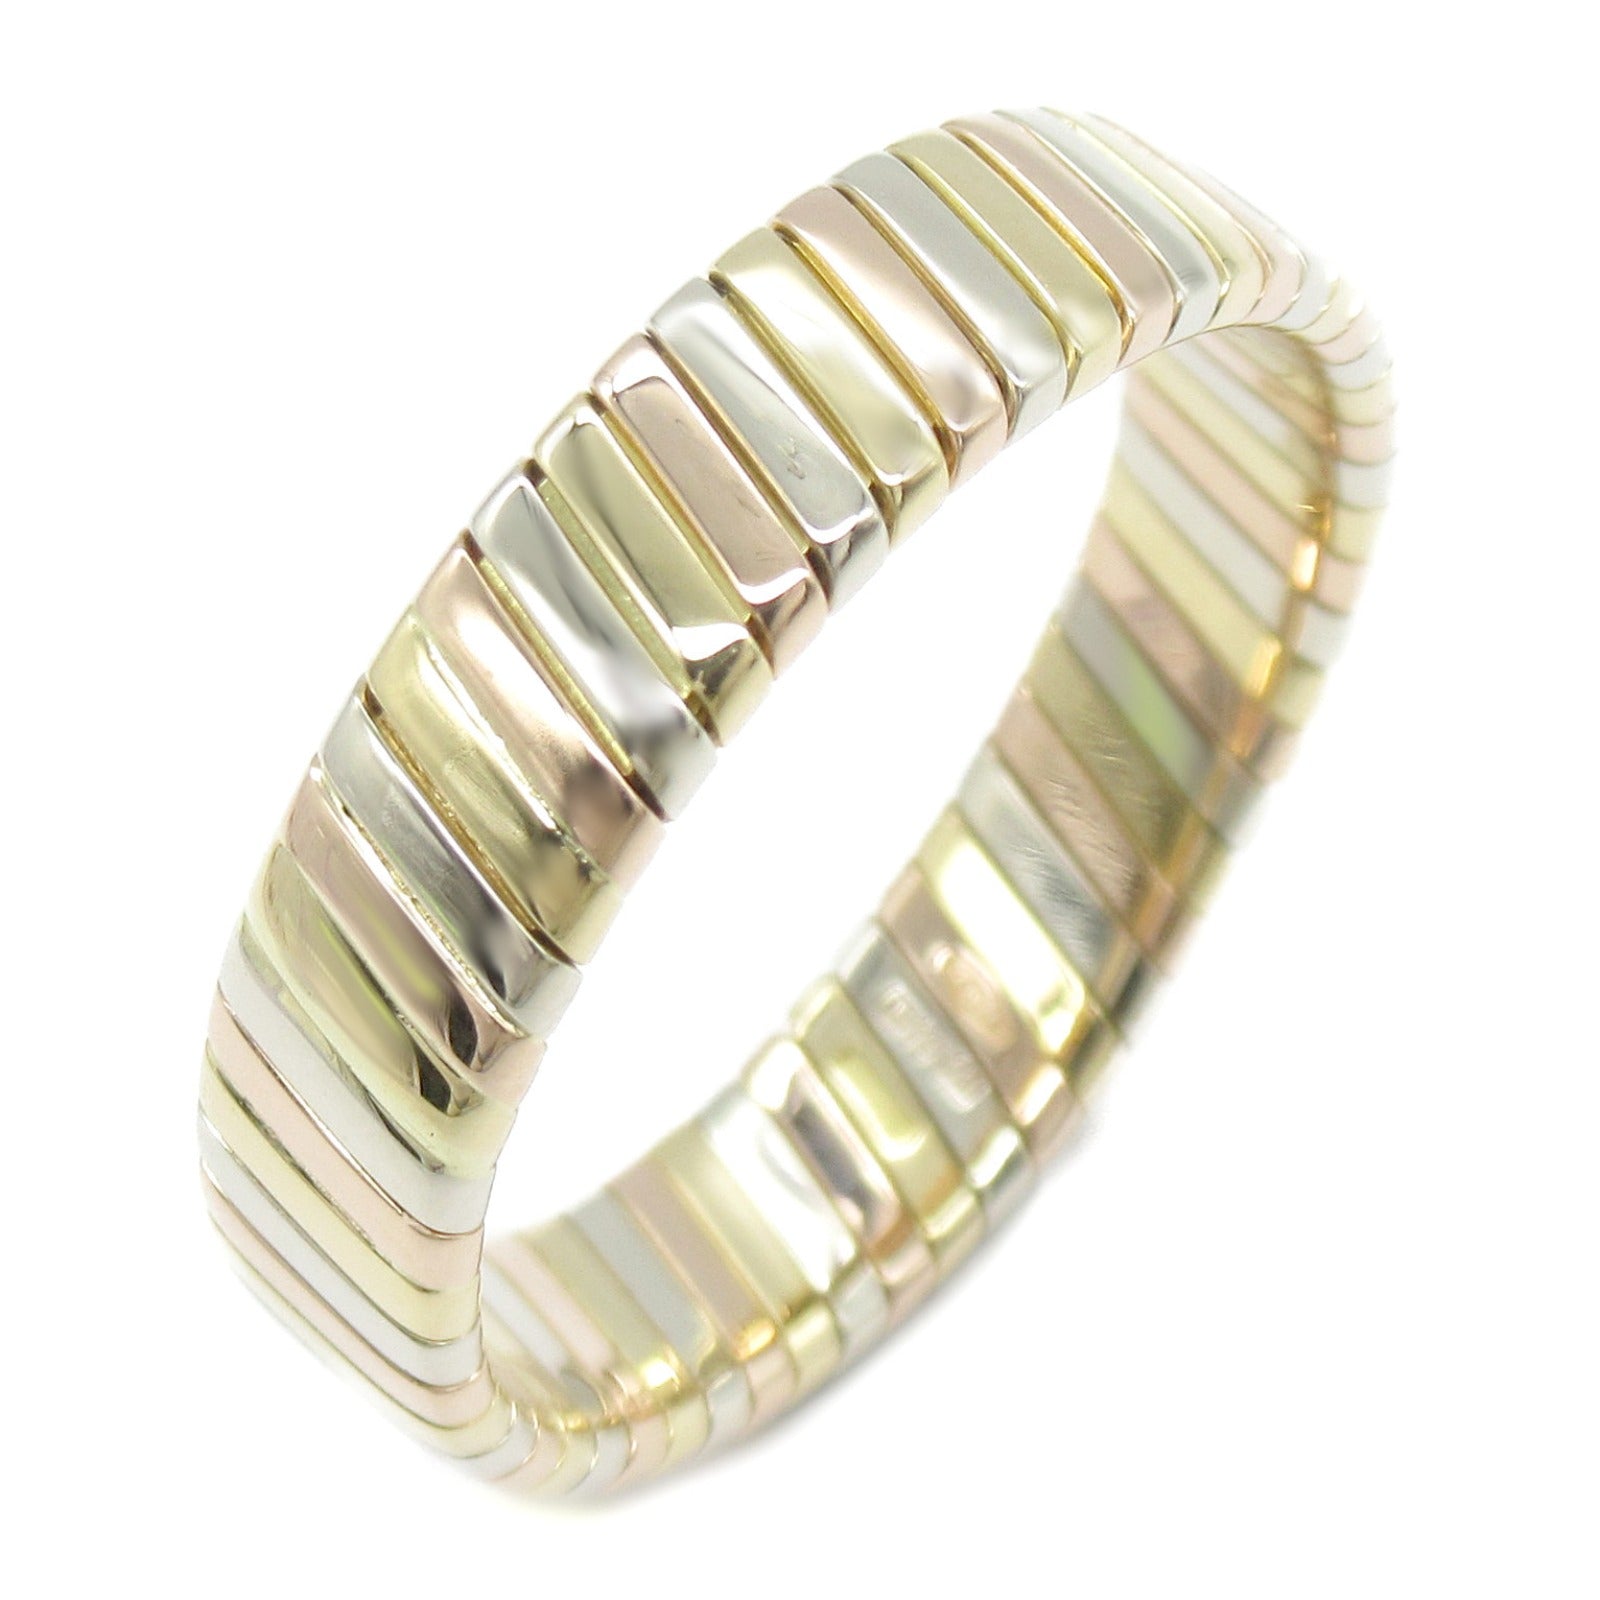 Bulgari BVLGARI Tubogas Ring Ring Ring Jewelry K18 (Yellow G) K18WG (White Gold) K18PG (Pink Gold)   Gold